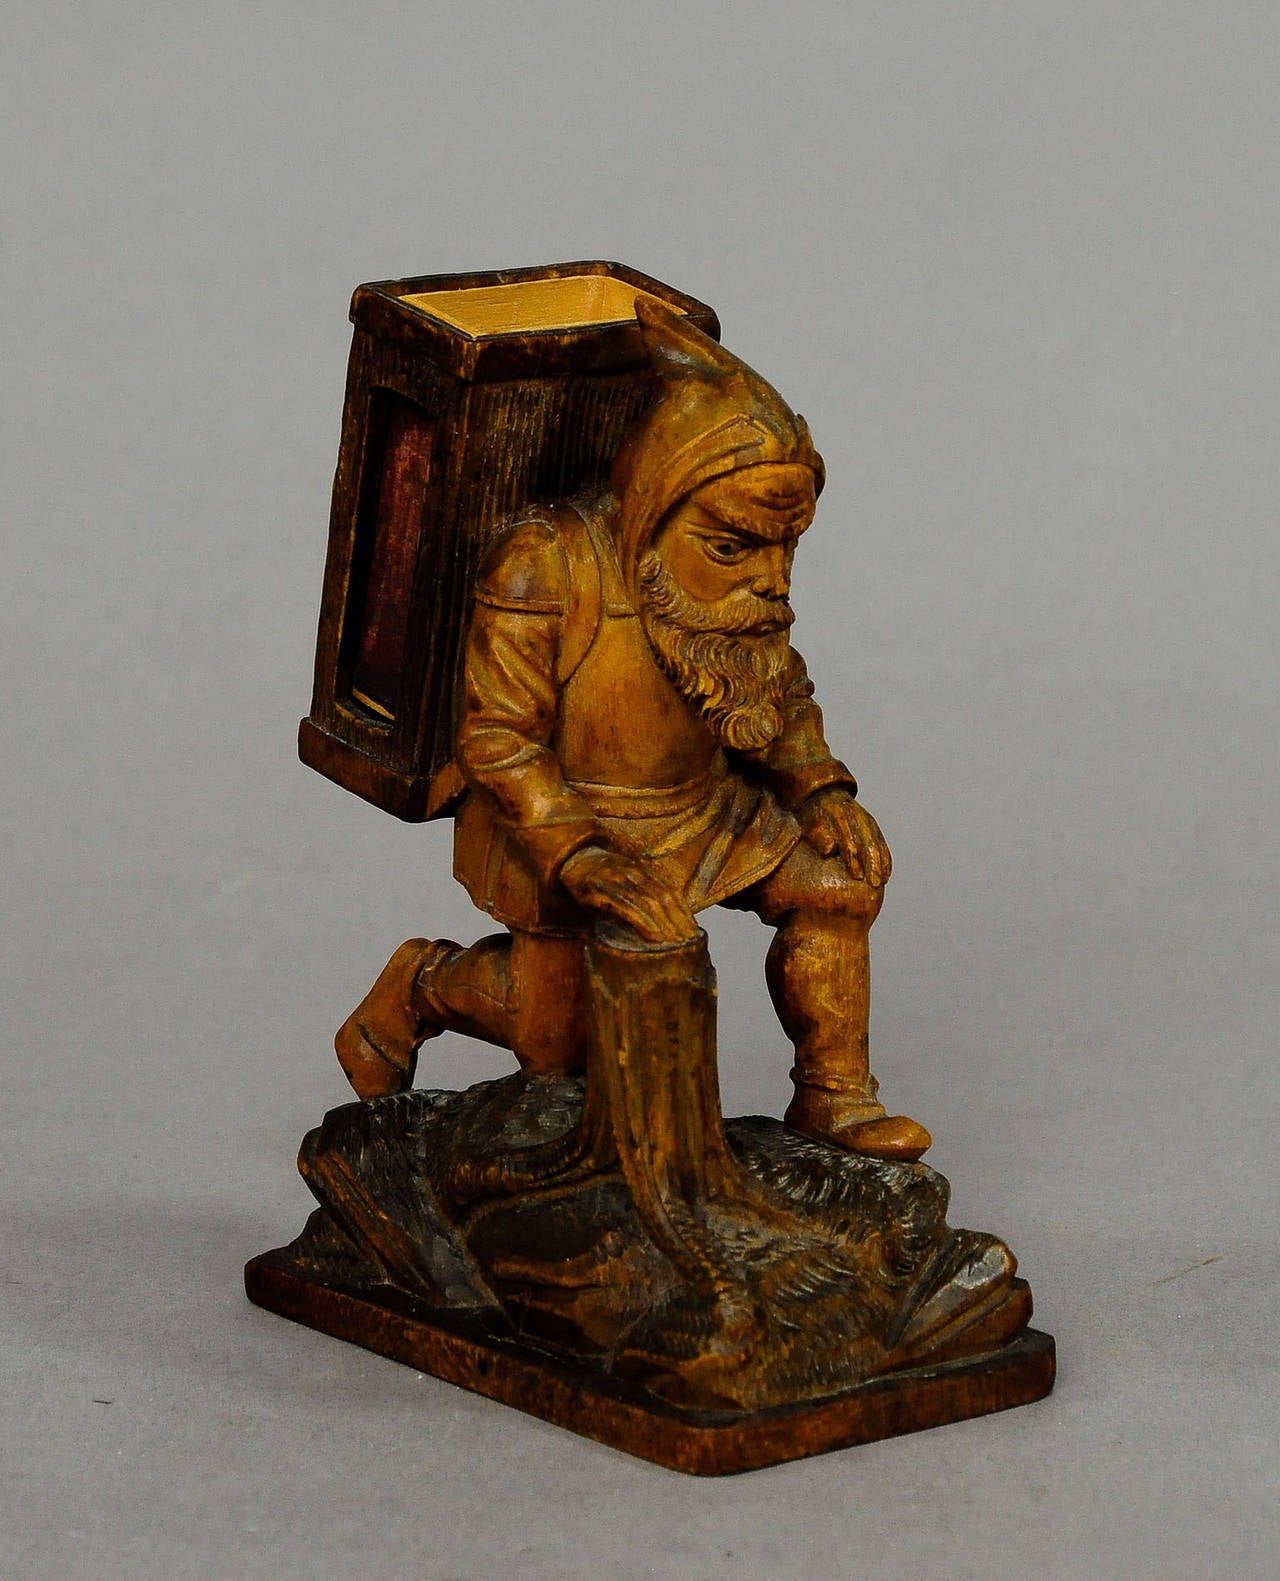 Black Forest black forest wooden carved dwarf matchbox holder